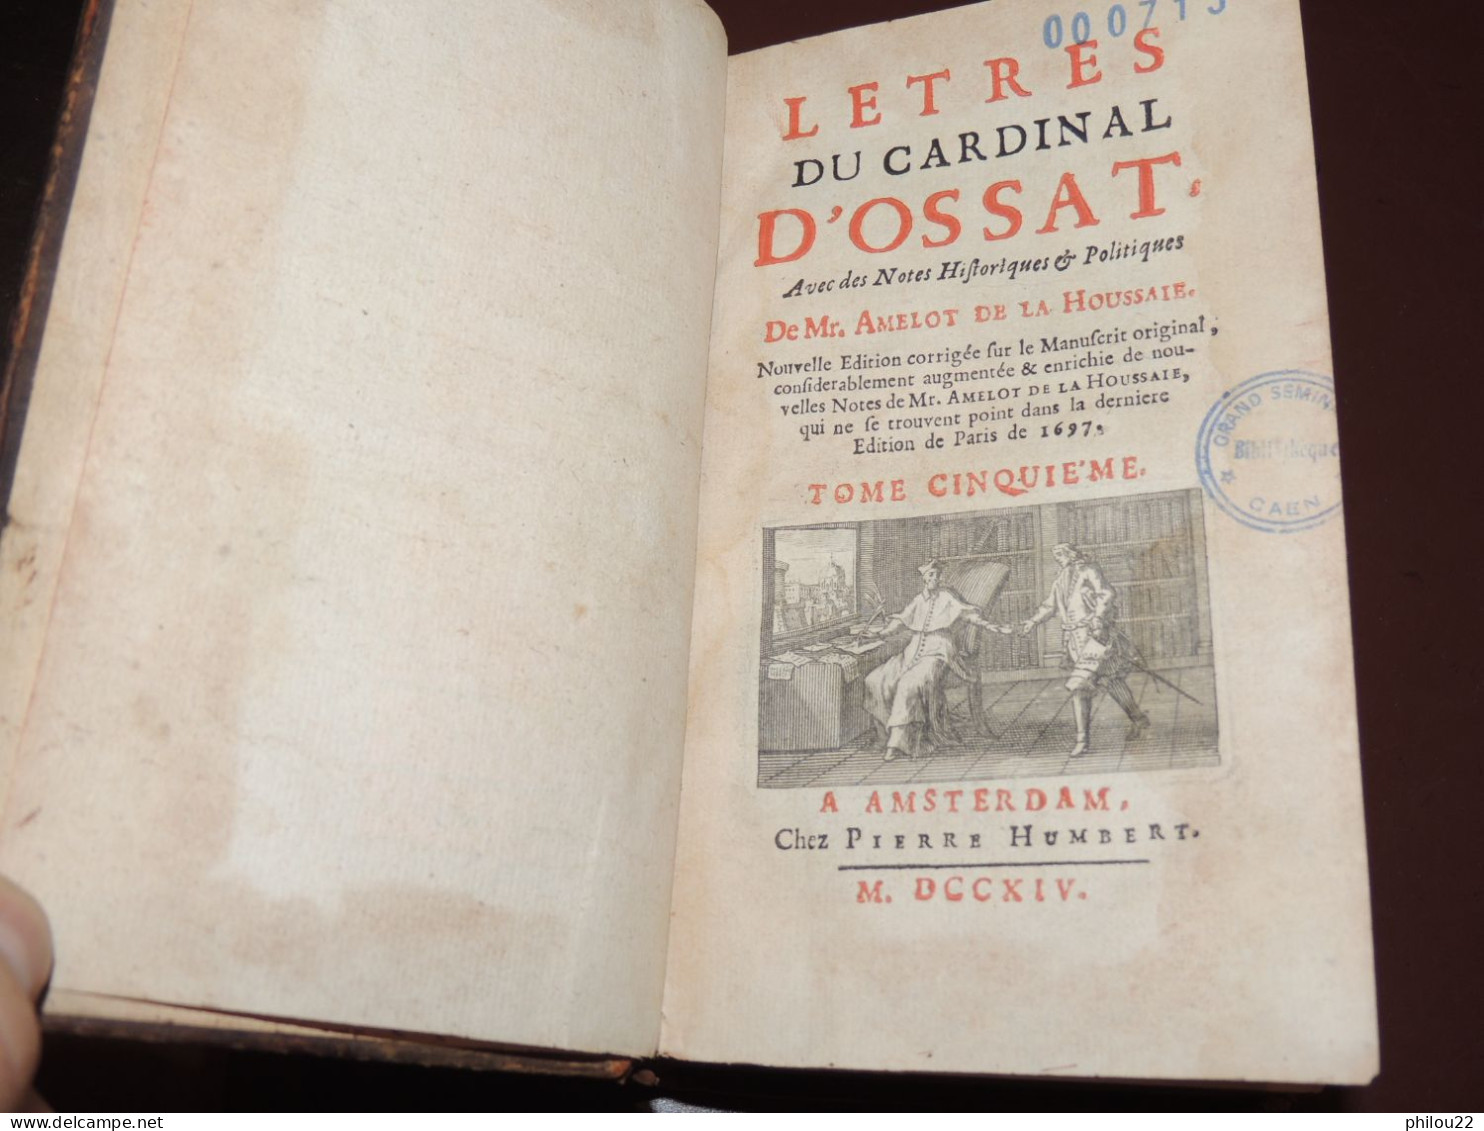 Lettres du cardinal D'Ossat (Evêque Rennes - Bayeux) Diplomatie - 5/5 vol. 1714